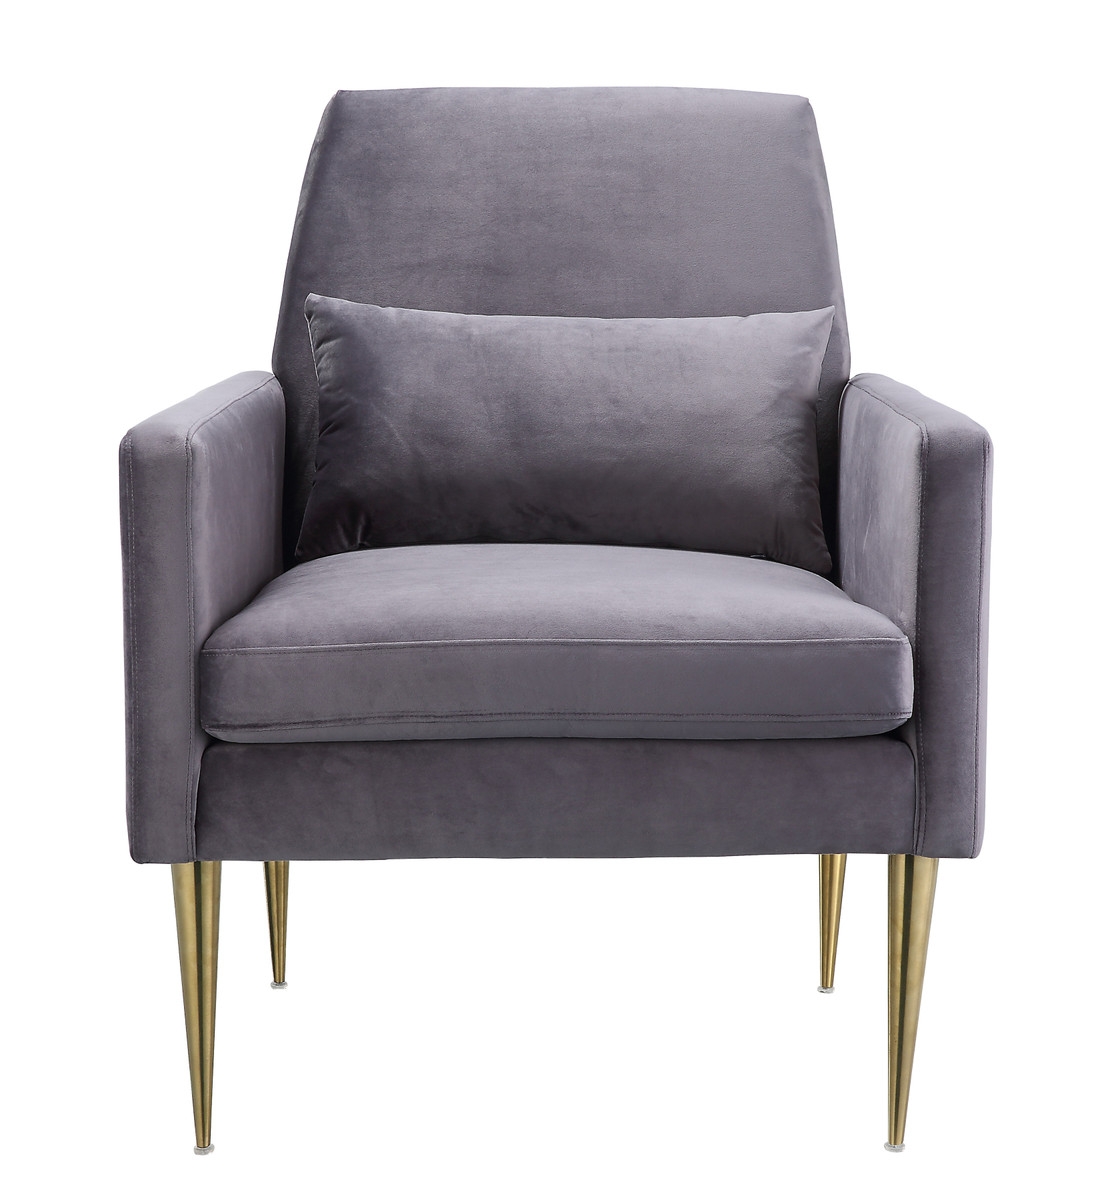 Peyton Morgan velvet armchair - Image 1